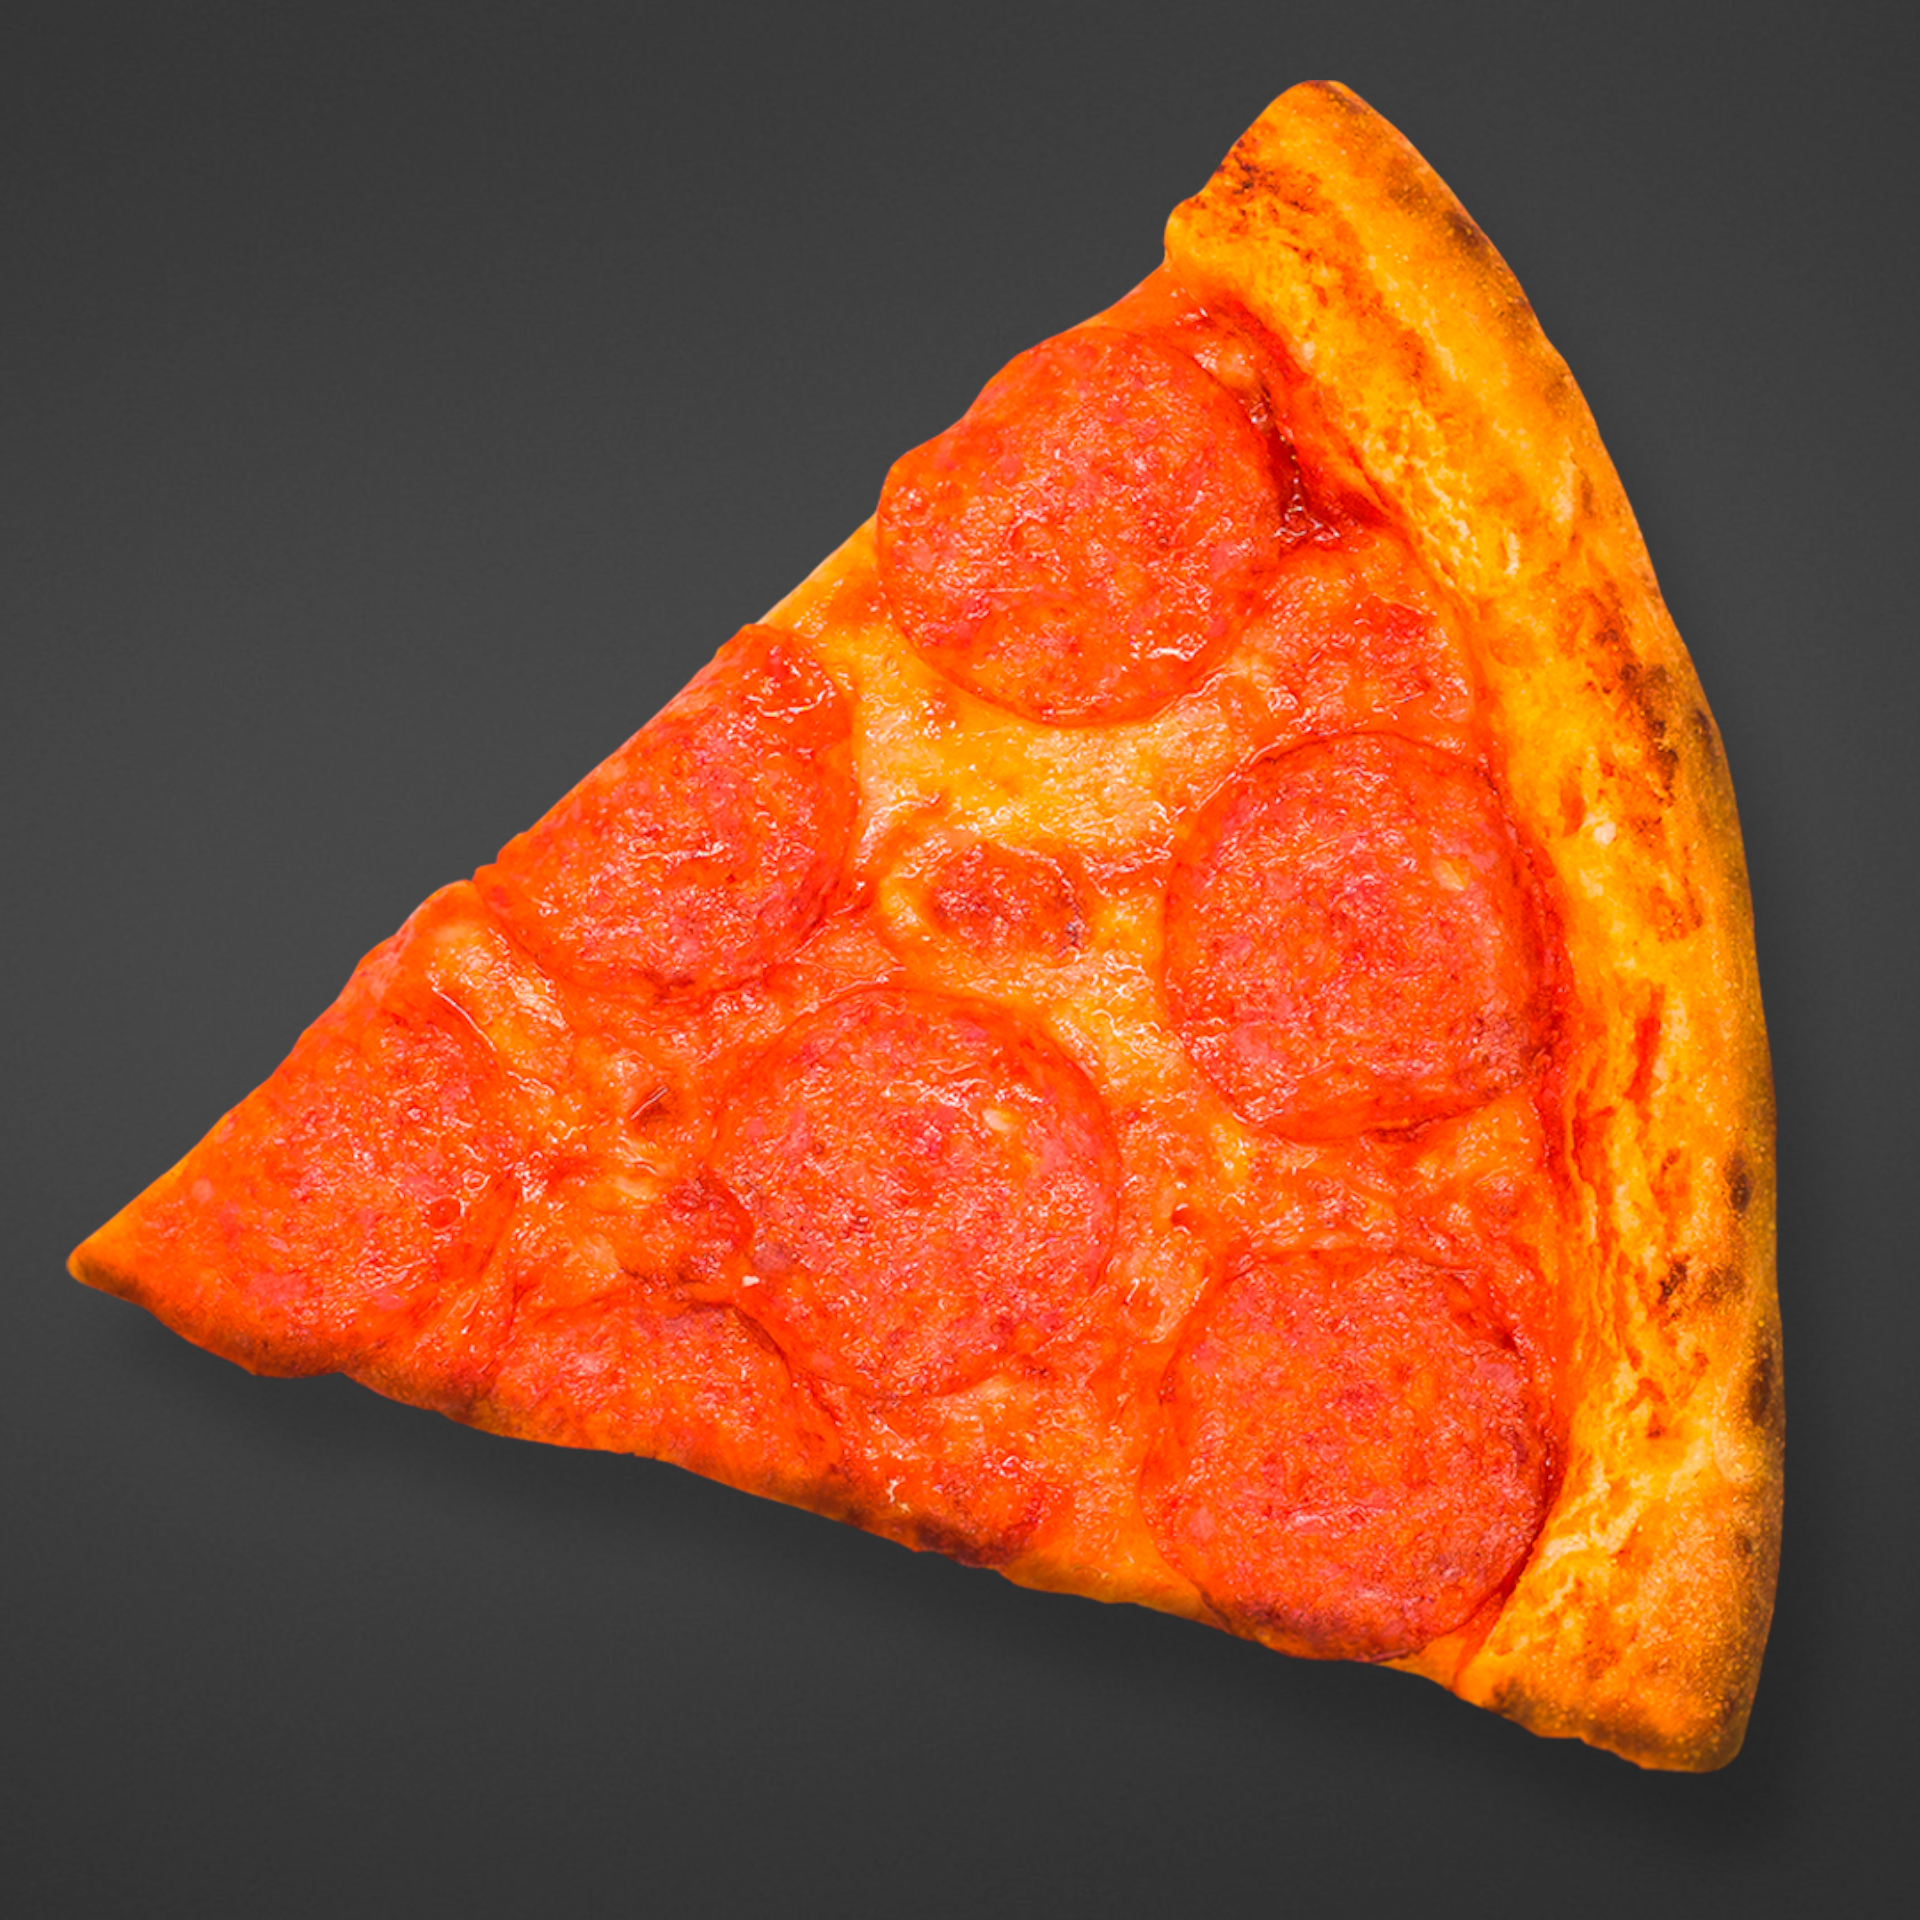 соус для пиццы пепперони как в додо фото 98